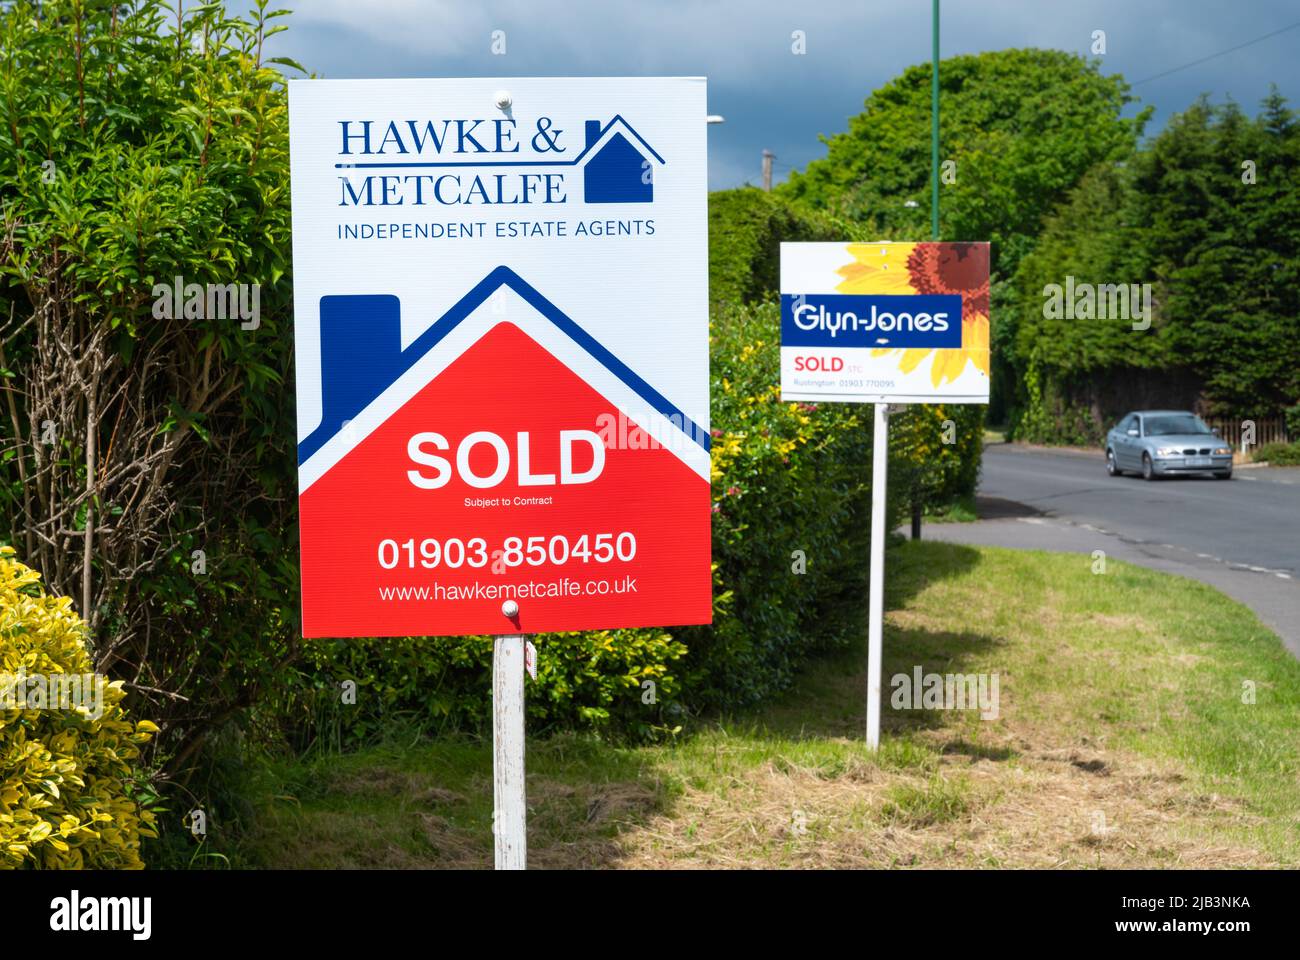 Immobilienmakler Zeichen (Hawke & Metcalfe) und eine andere für Glyn Jones Immobilienmakler zeigt Häuser oder Immobilien verkauft. Haus verkauft Zeichen in England, Großbritannien. Stockfoto